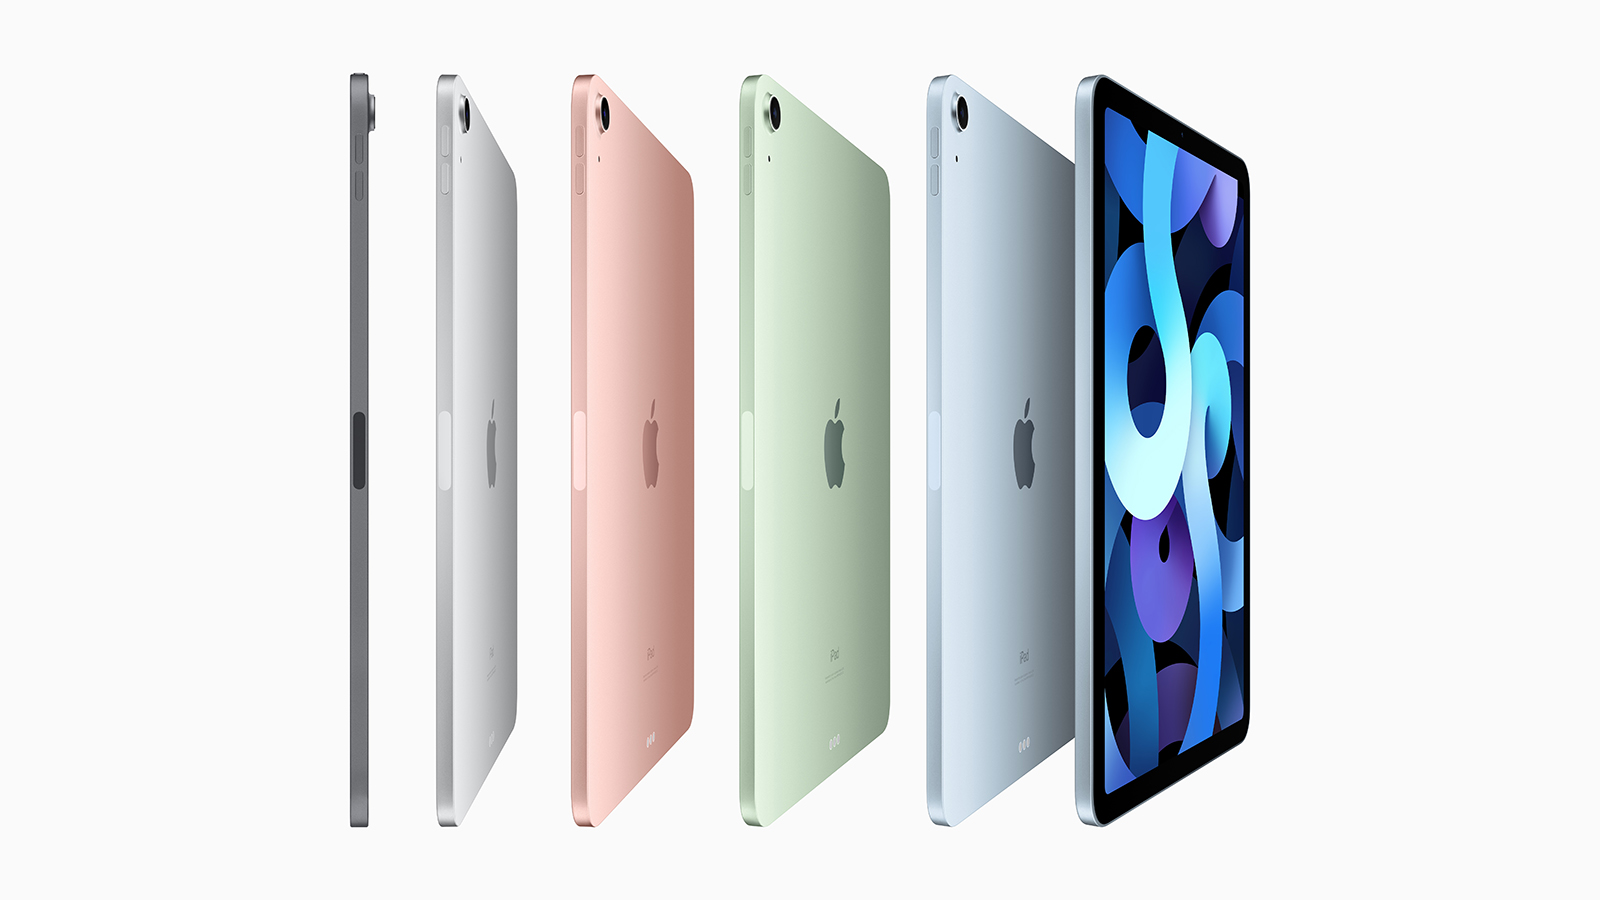 iPad Air 2022 : tout ce que l'on sait sur la prochaine tablette d'Apple